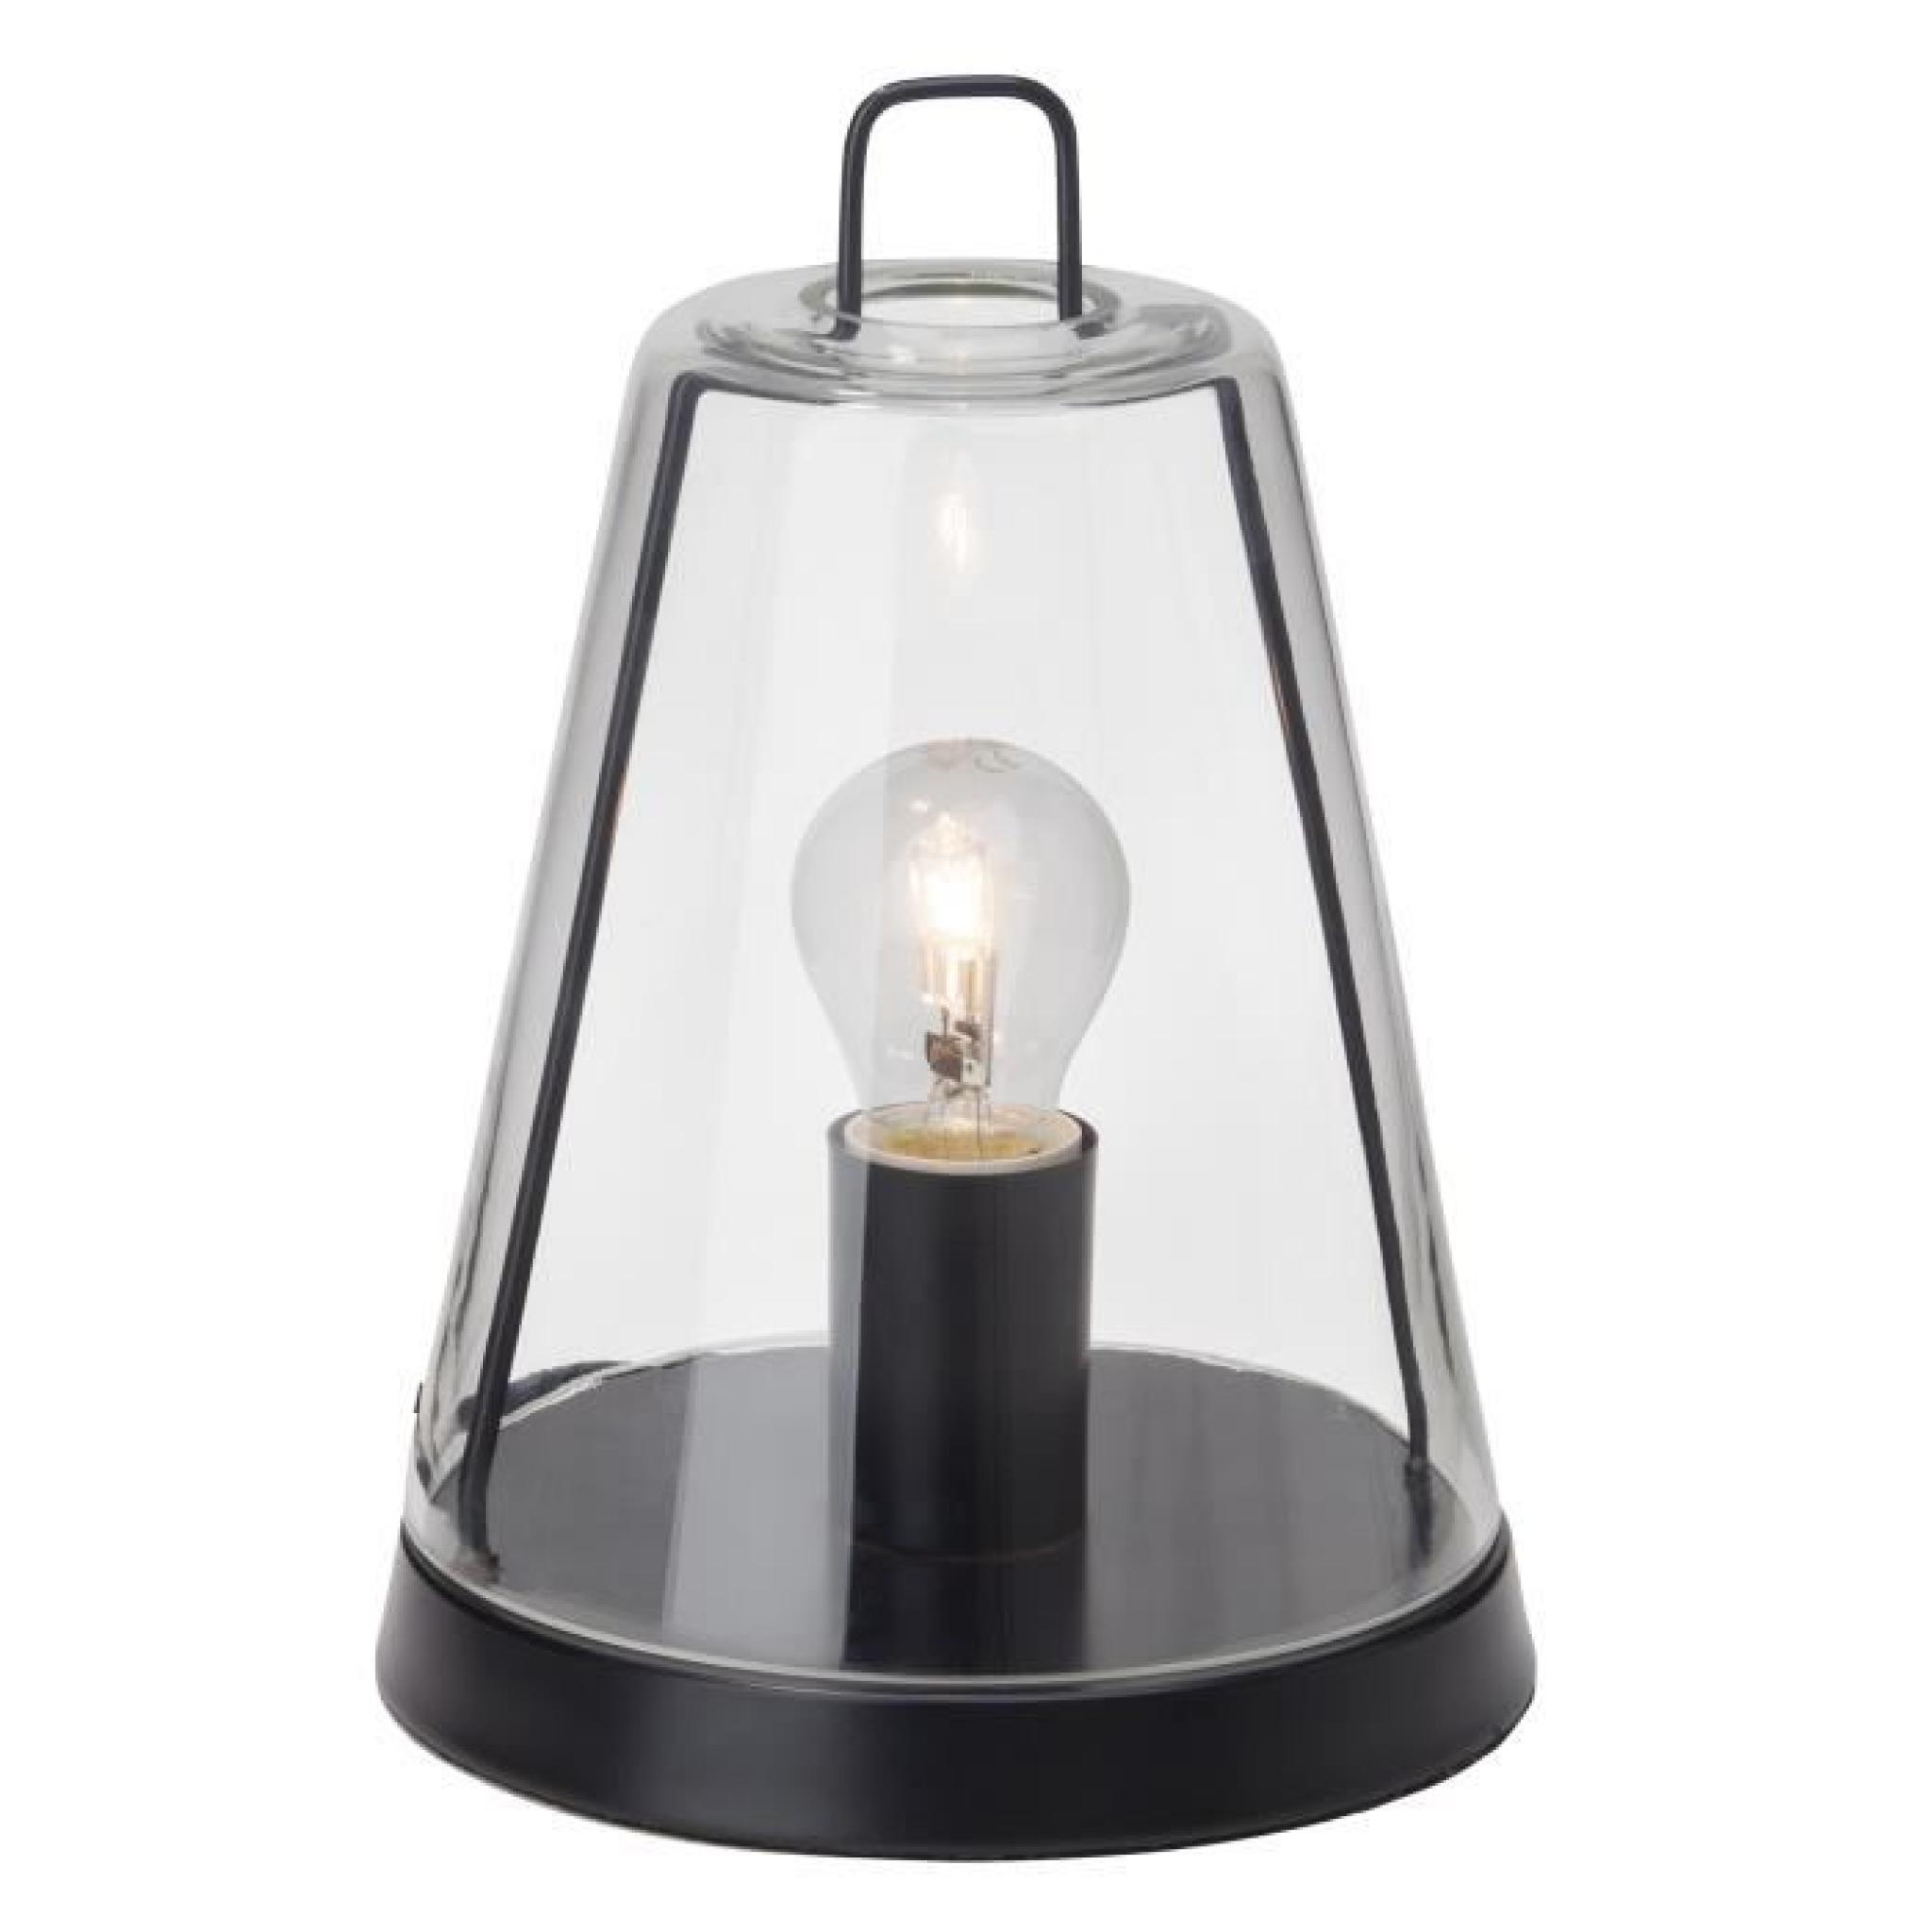 Lampe à poser en métal et verre transparent hauteur 26 cm Handy-